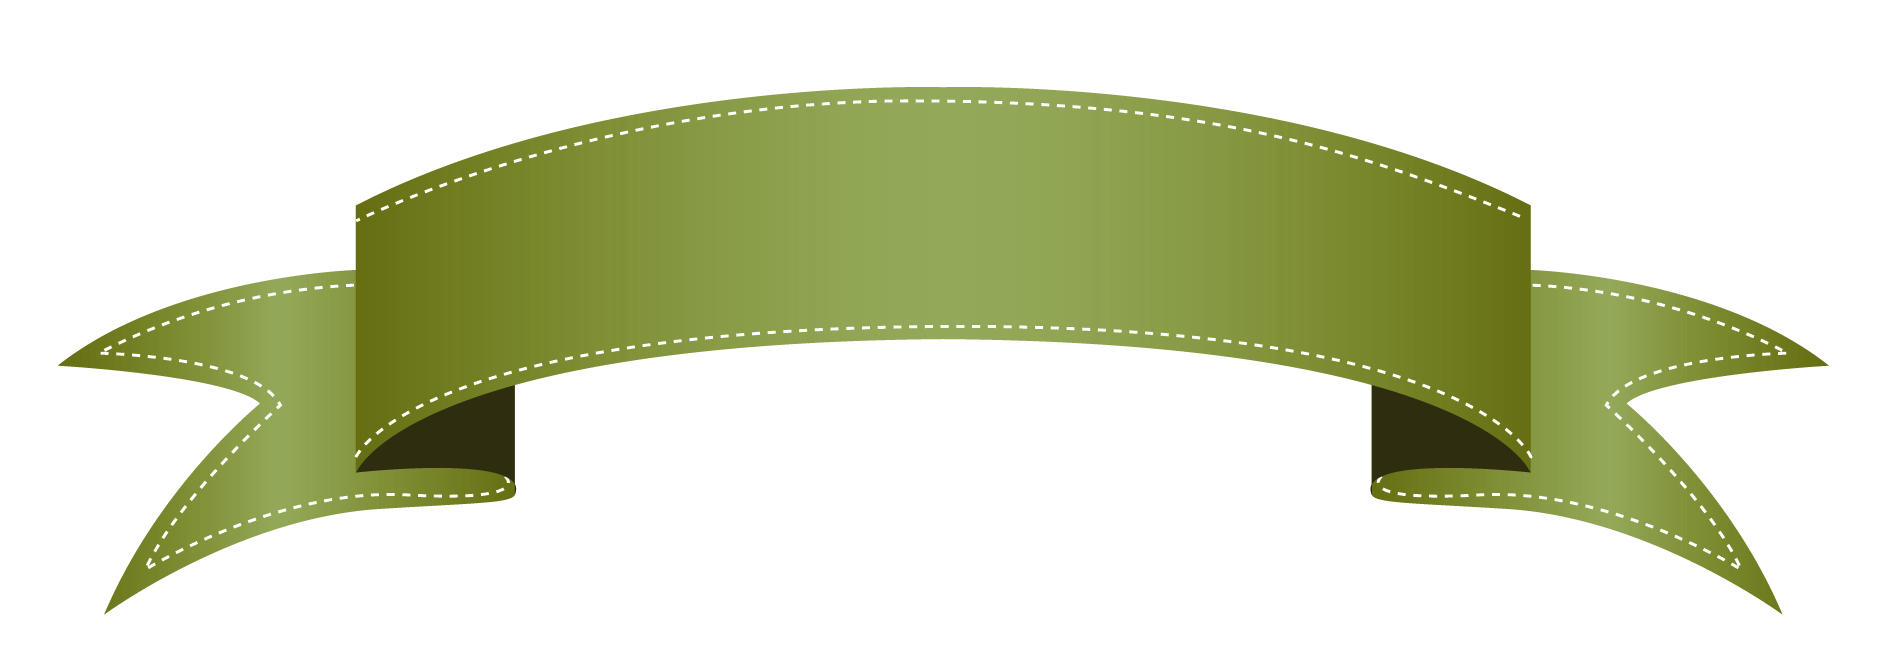 Green transparent banner clipart 0